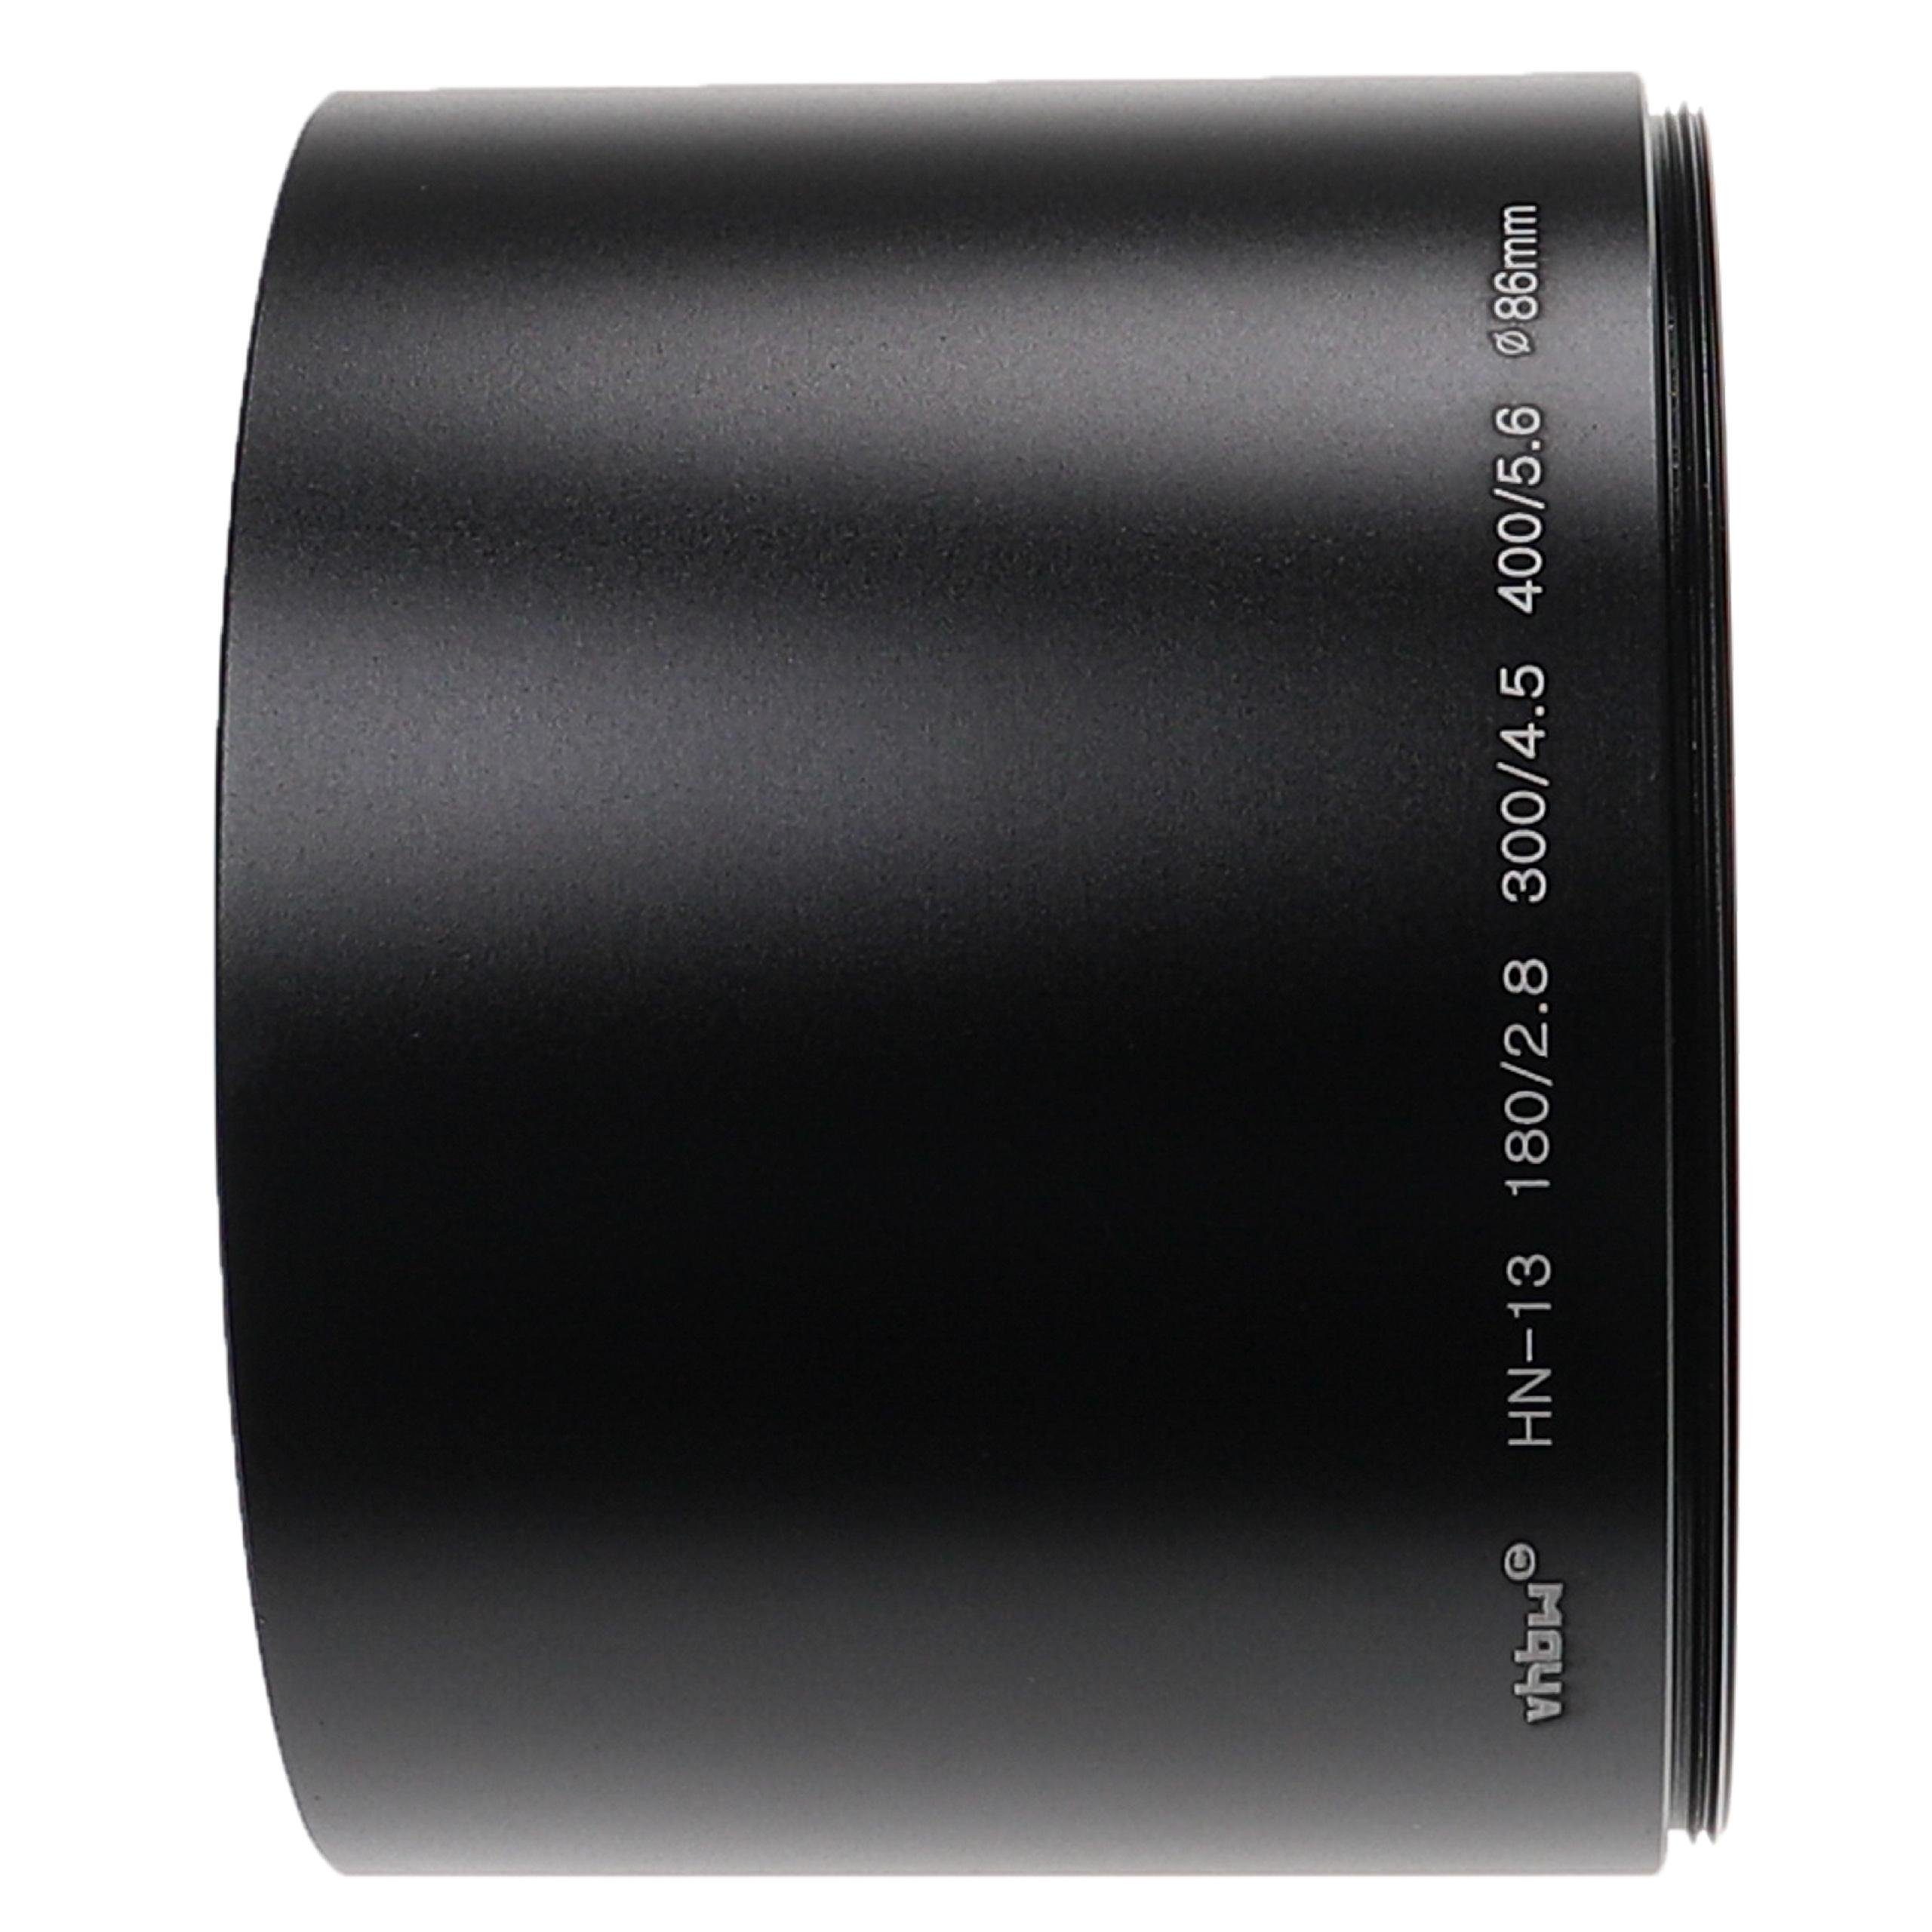 mm Polfilter 72 Objektive 180/2.8, passend für 300/4.5, mit Nikon vhbw Gegenlichtblende